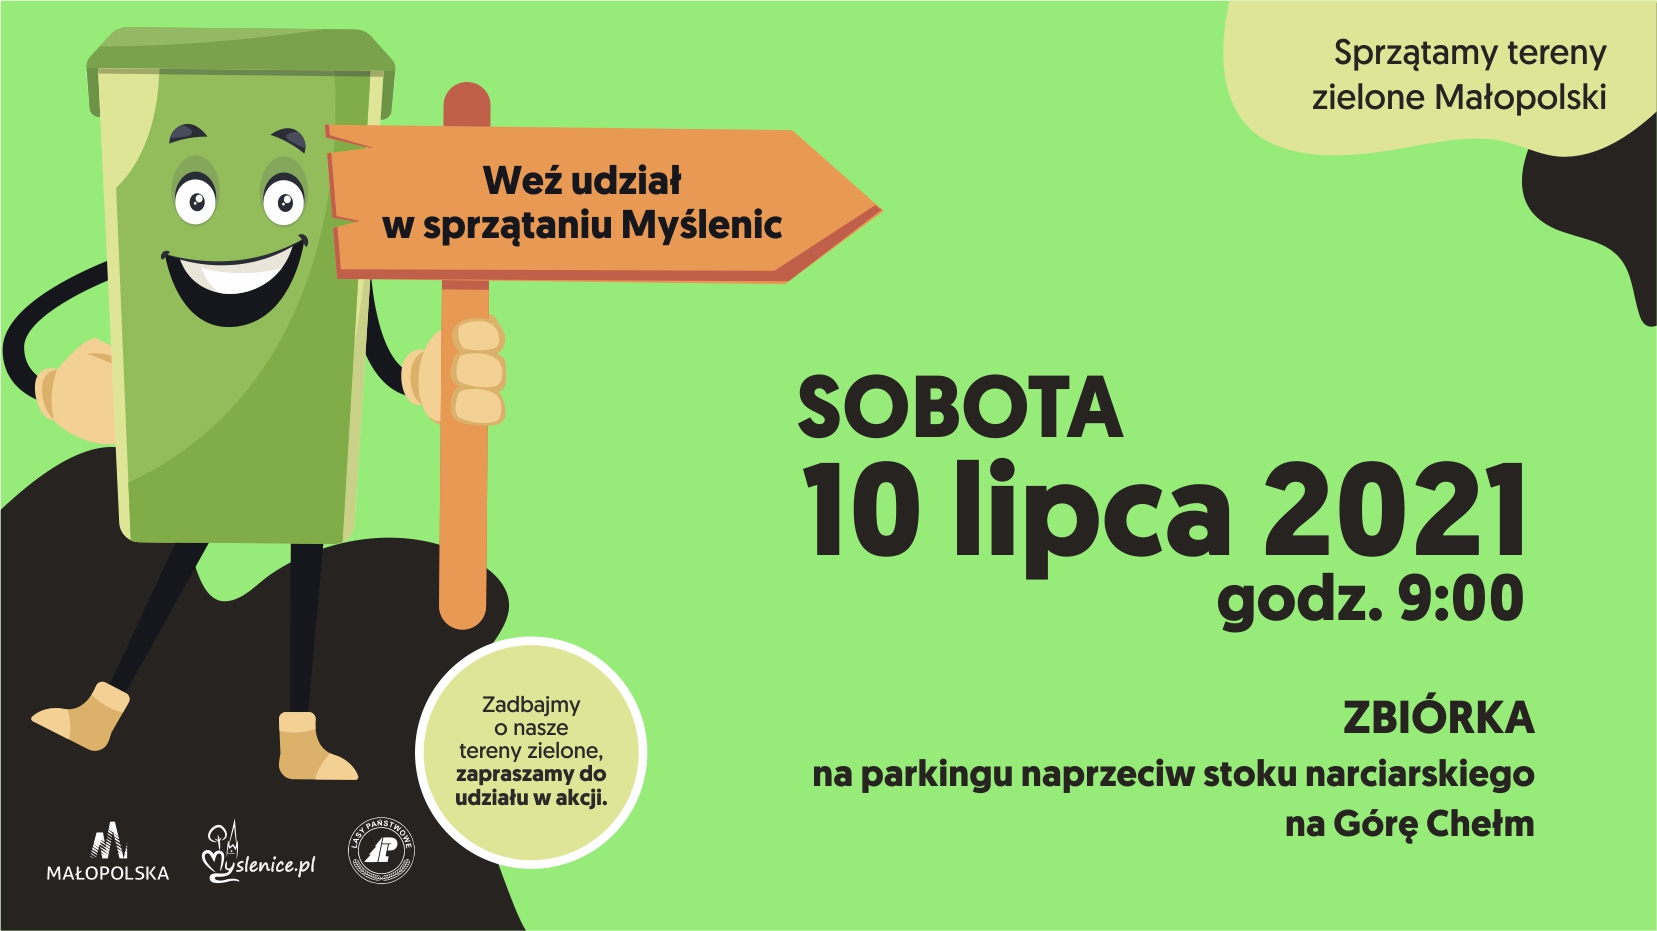 Sprzątamy tereny zielone Małopolski – weź udział w sprzątaniu Myśleni